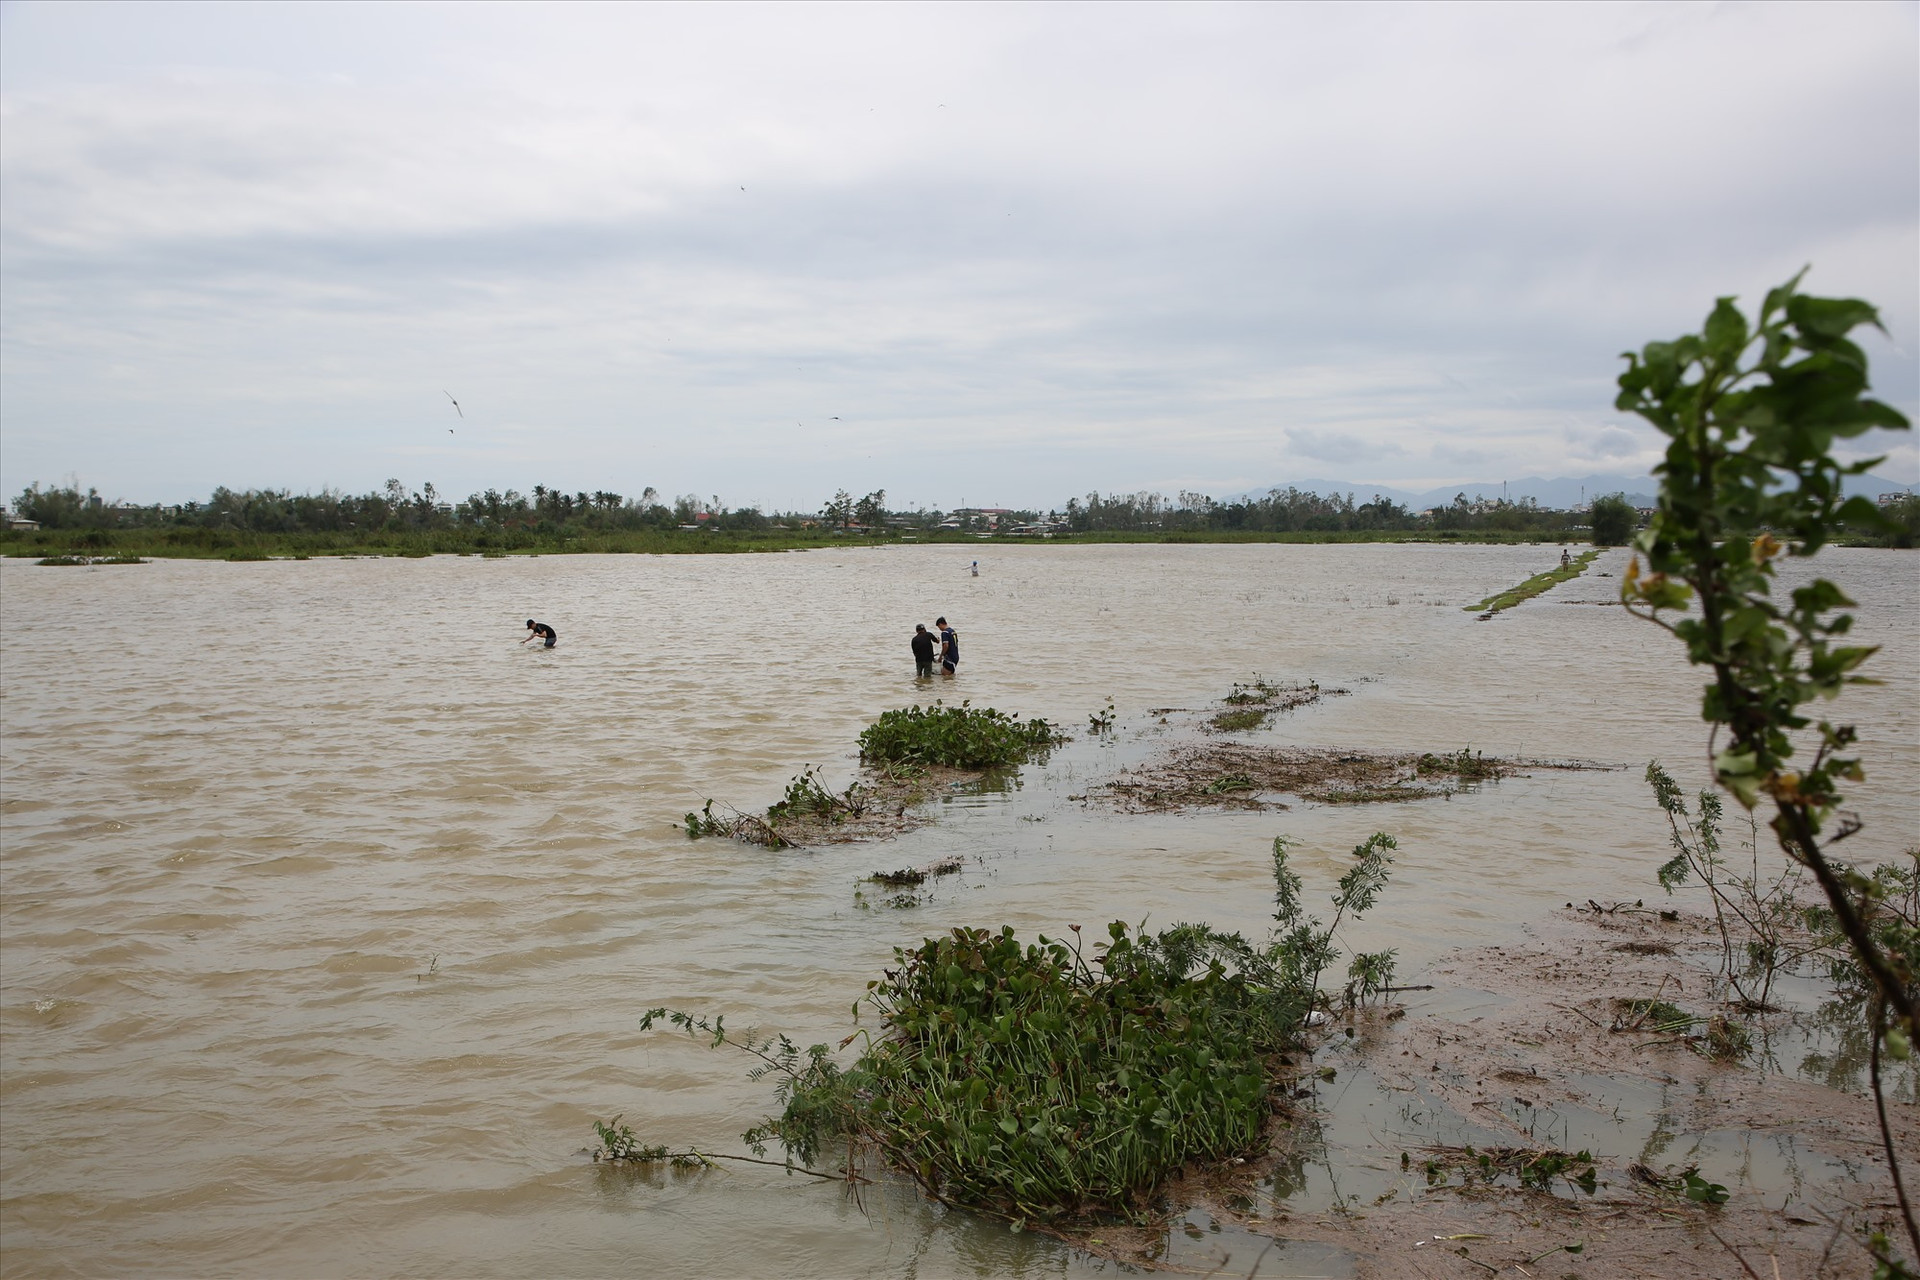 Sau bão, nước sông dâng cao tạo dòng chảy để cá sông kiếm ăn mùa lũ. Ảnh: Đ.N